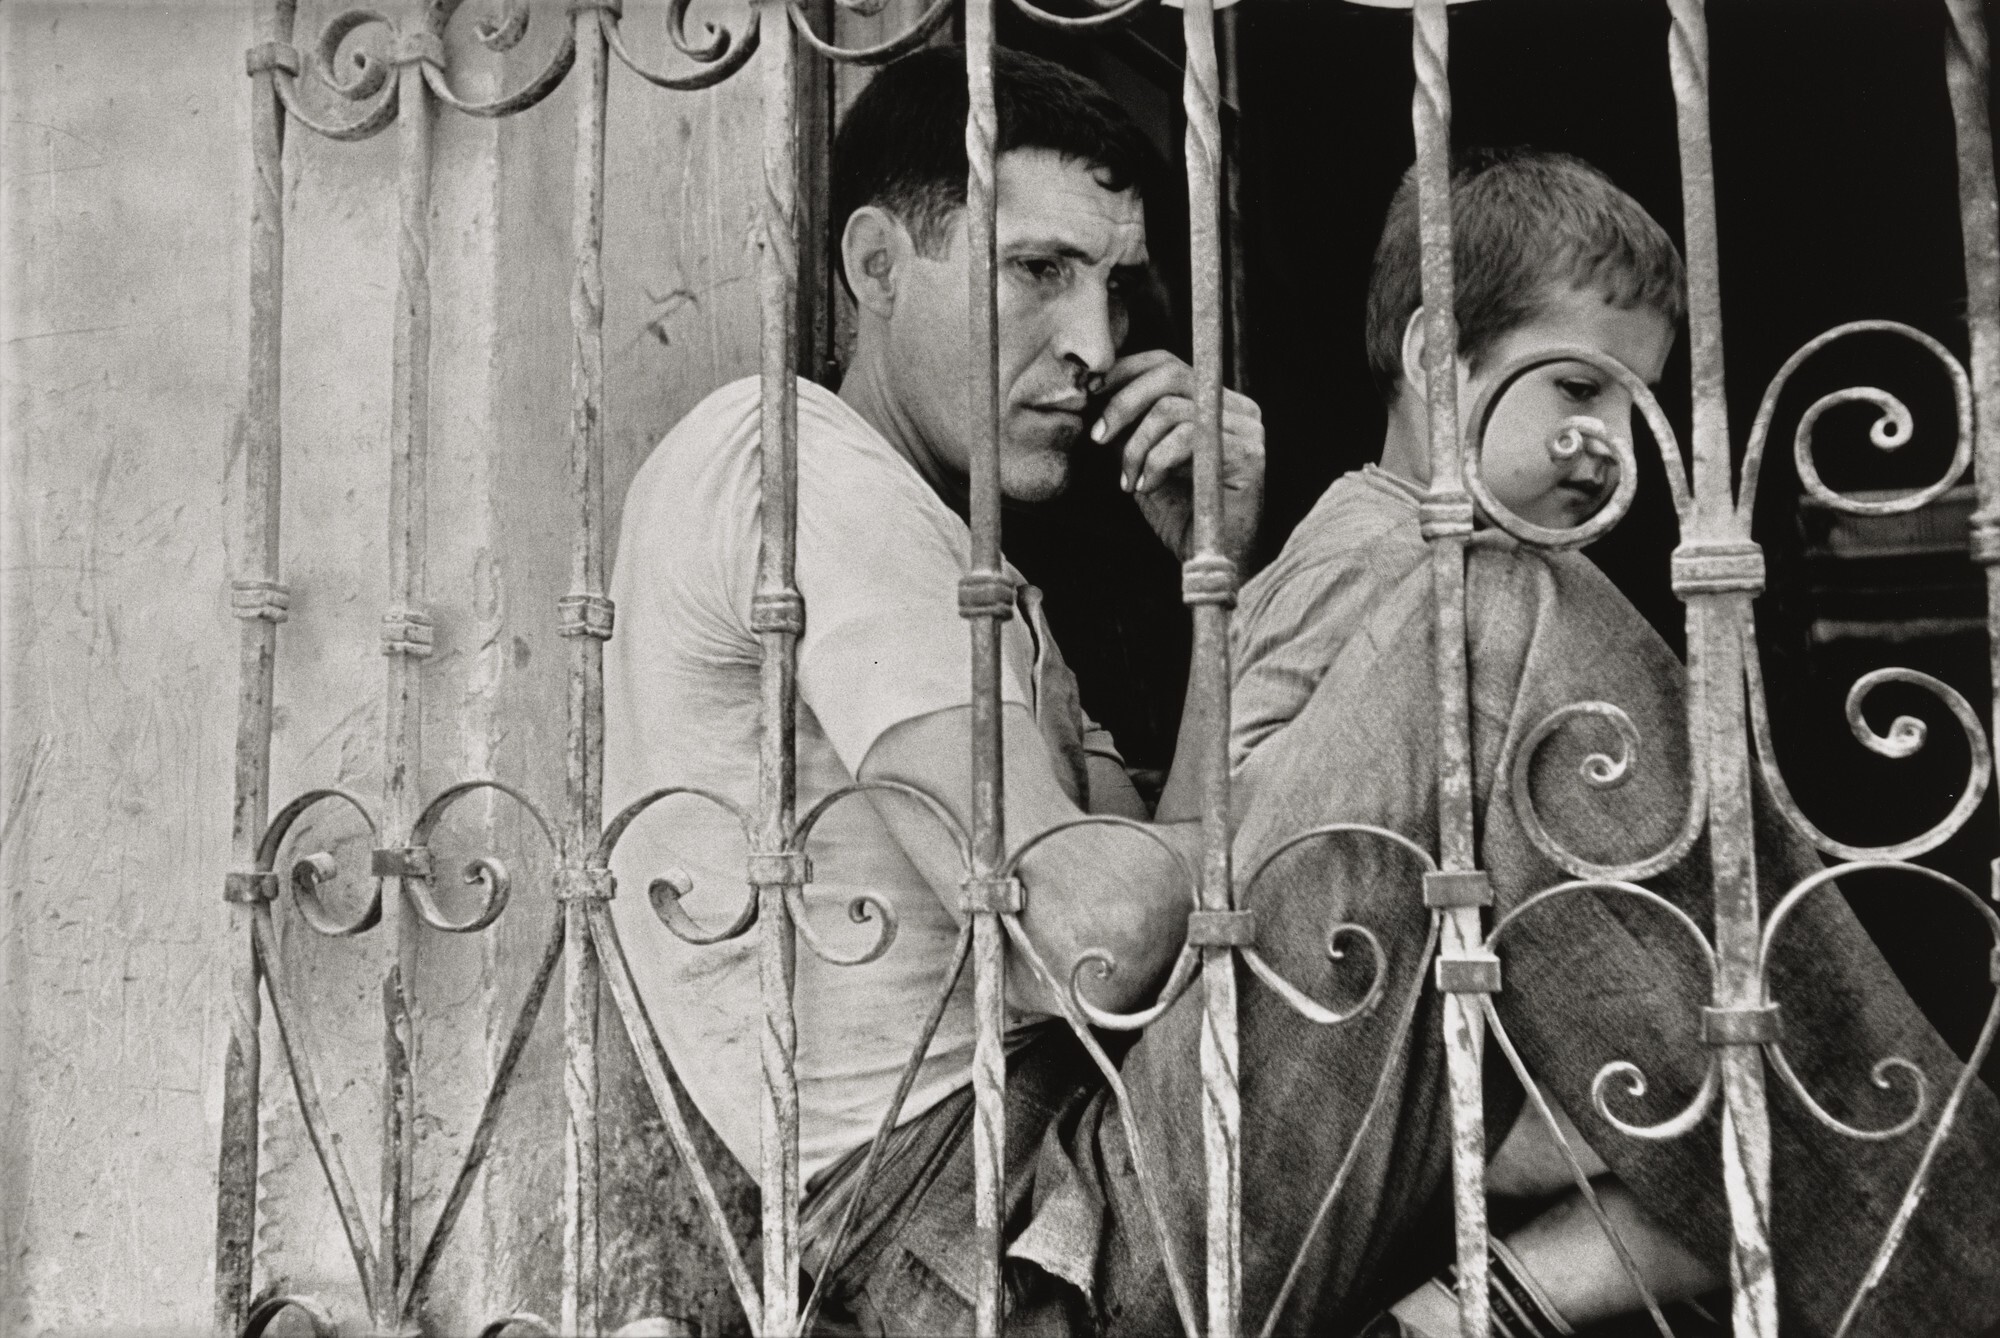 Испания, 1933. Фотограф Анри Картье-Брессон